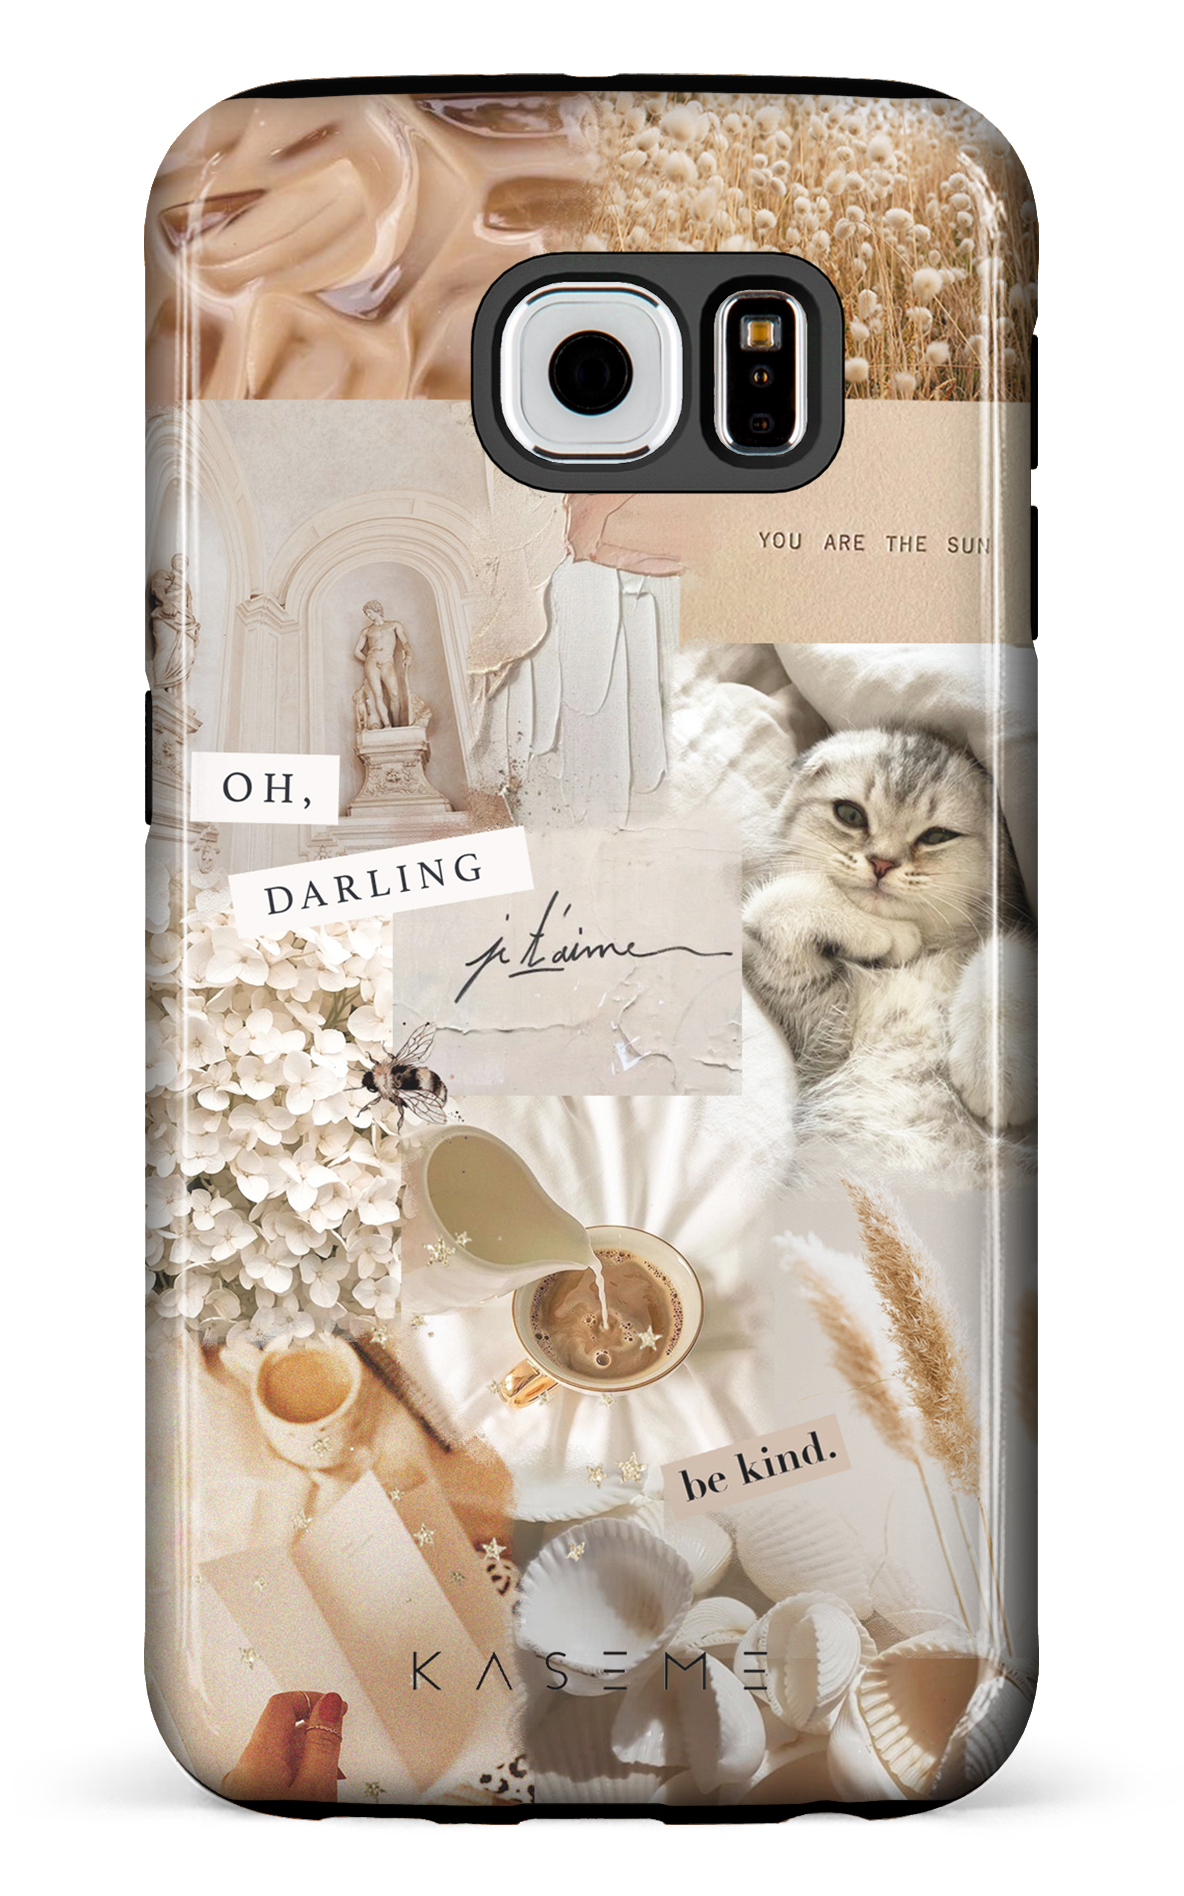 Darlin' - Galaxy S6